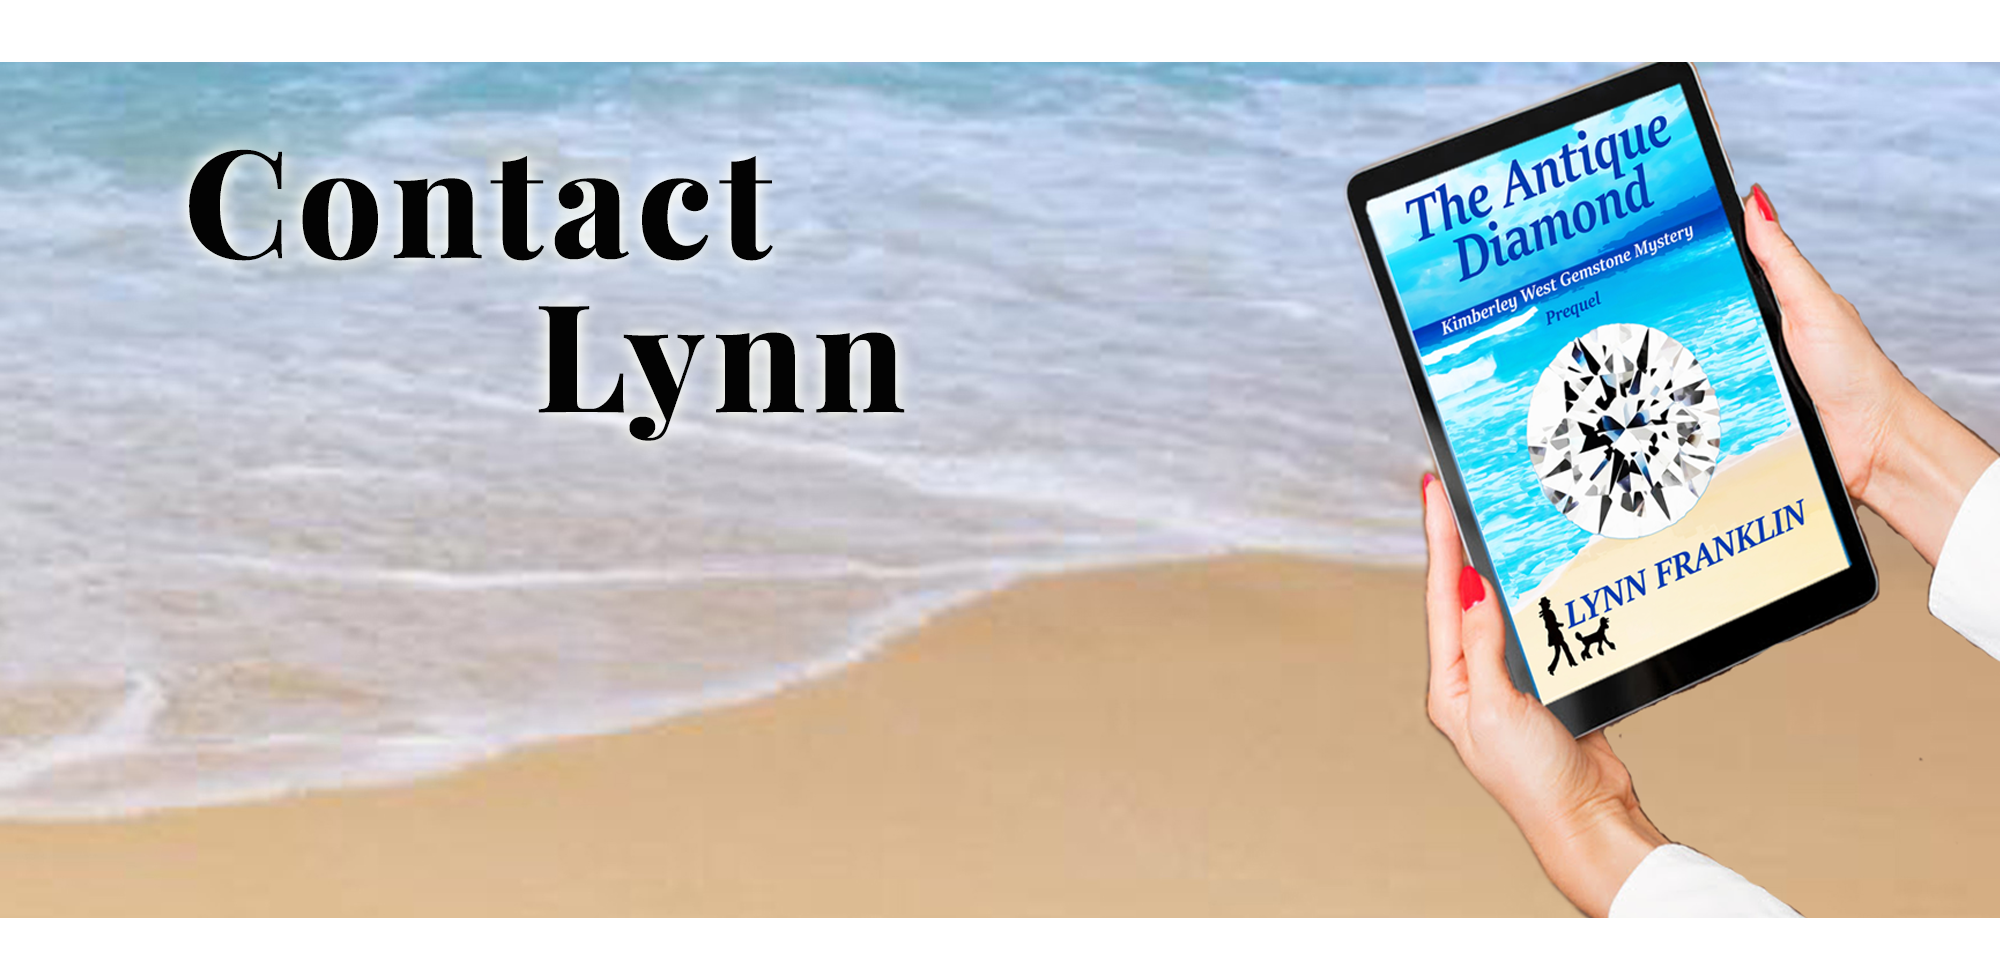 Contact Lynn